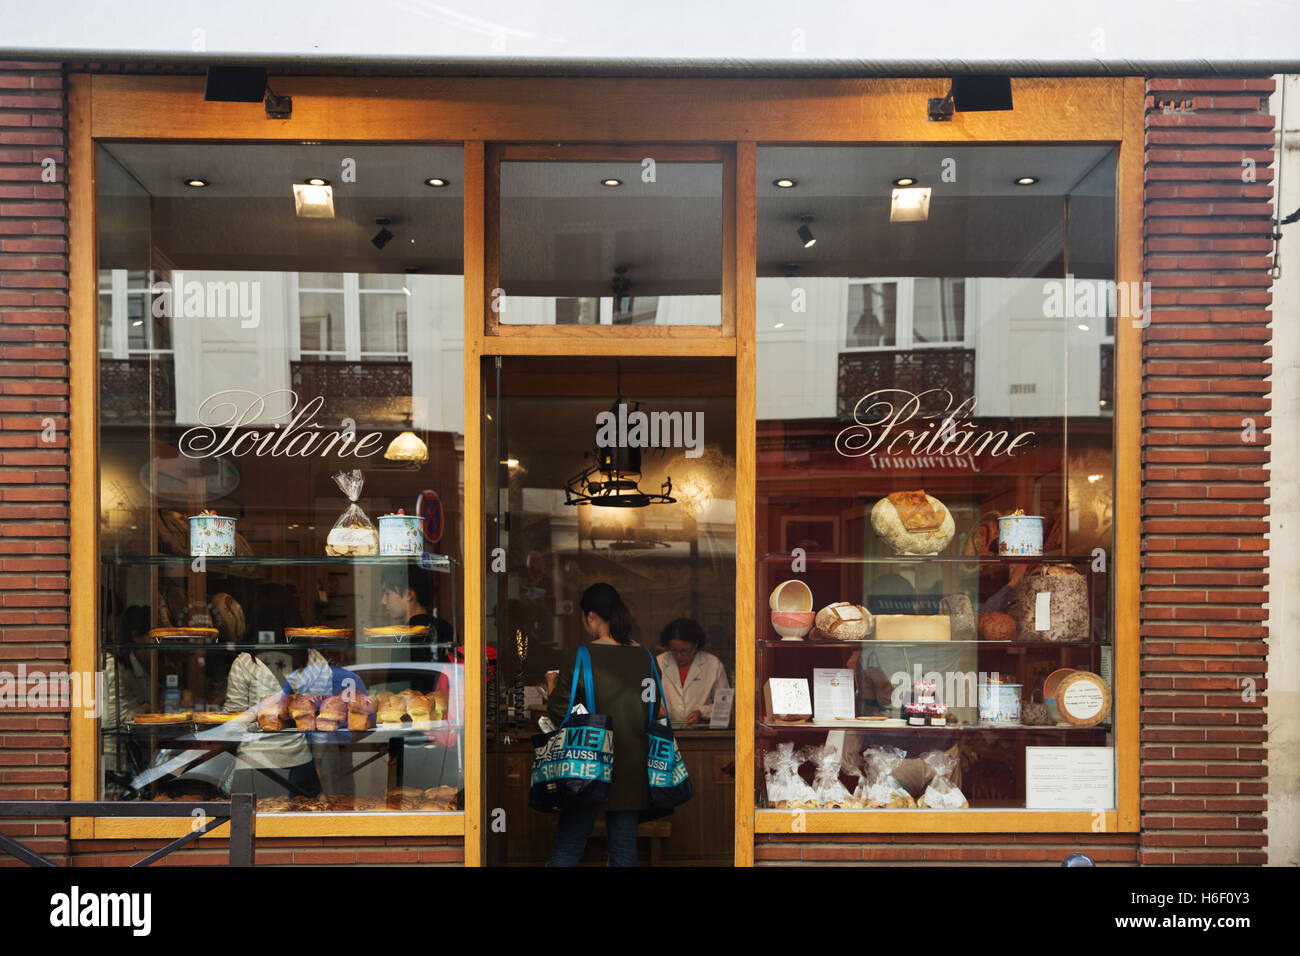 Poîlane bakery on 8 rue du Cherche-Midi, Saint-Germain-des-Prés district, Paris Stock Photo